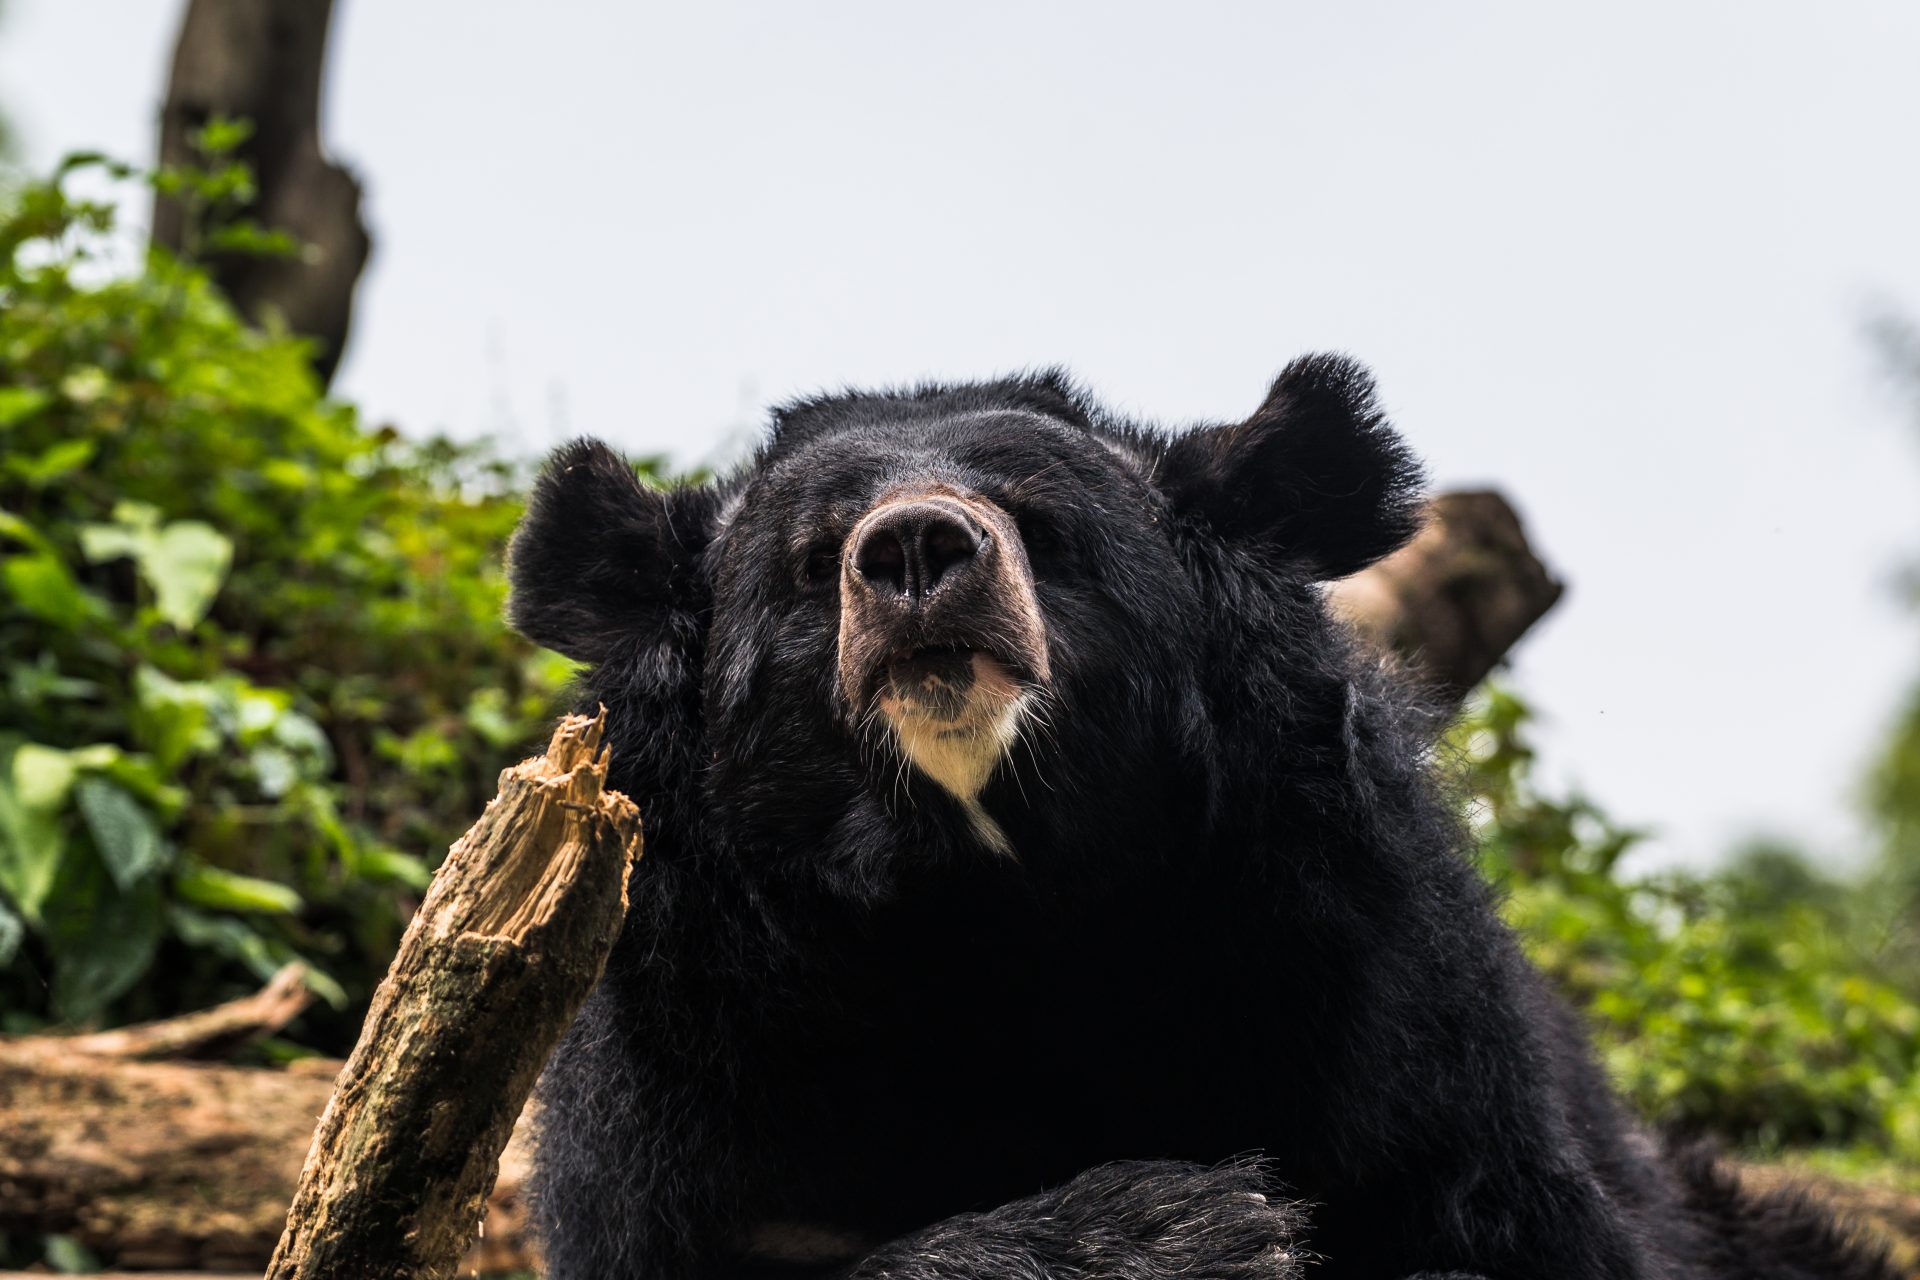 増える熊による被害：熊の駆除に一頭5,000円の報奨金も